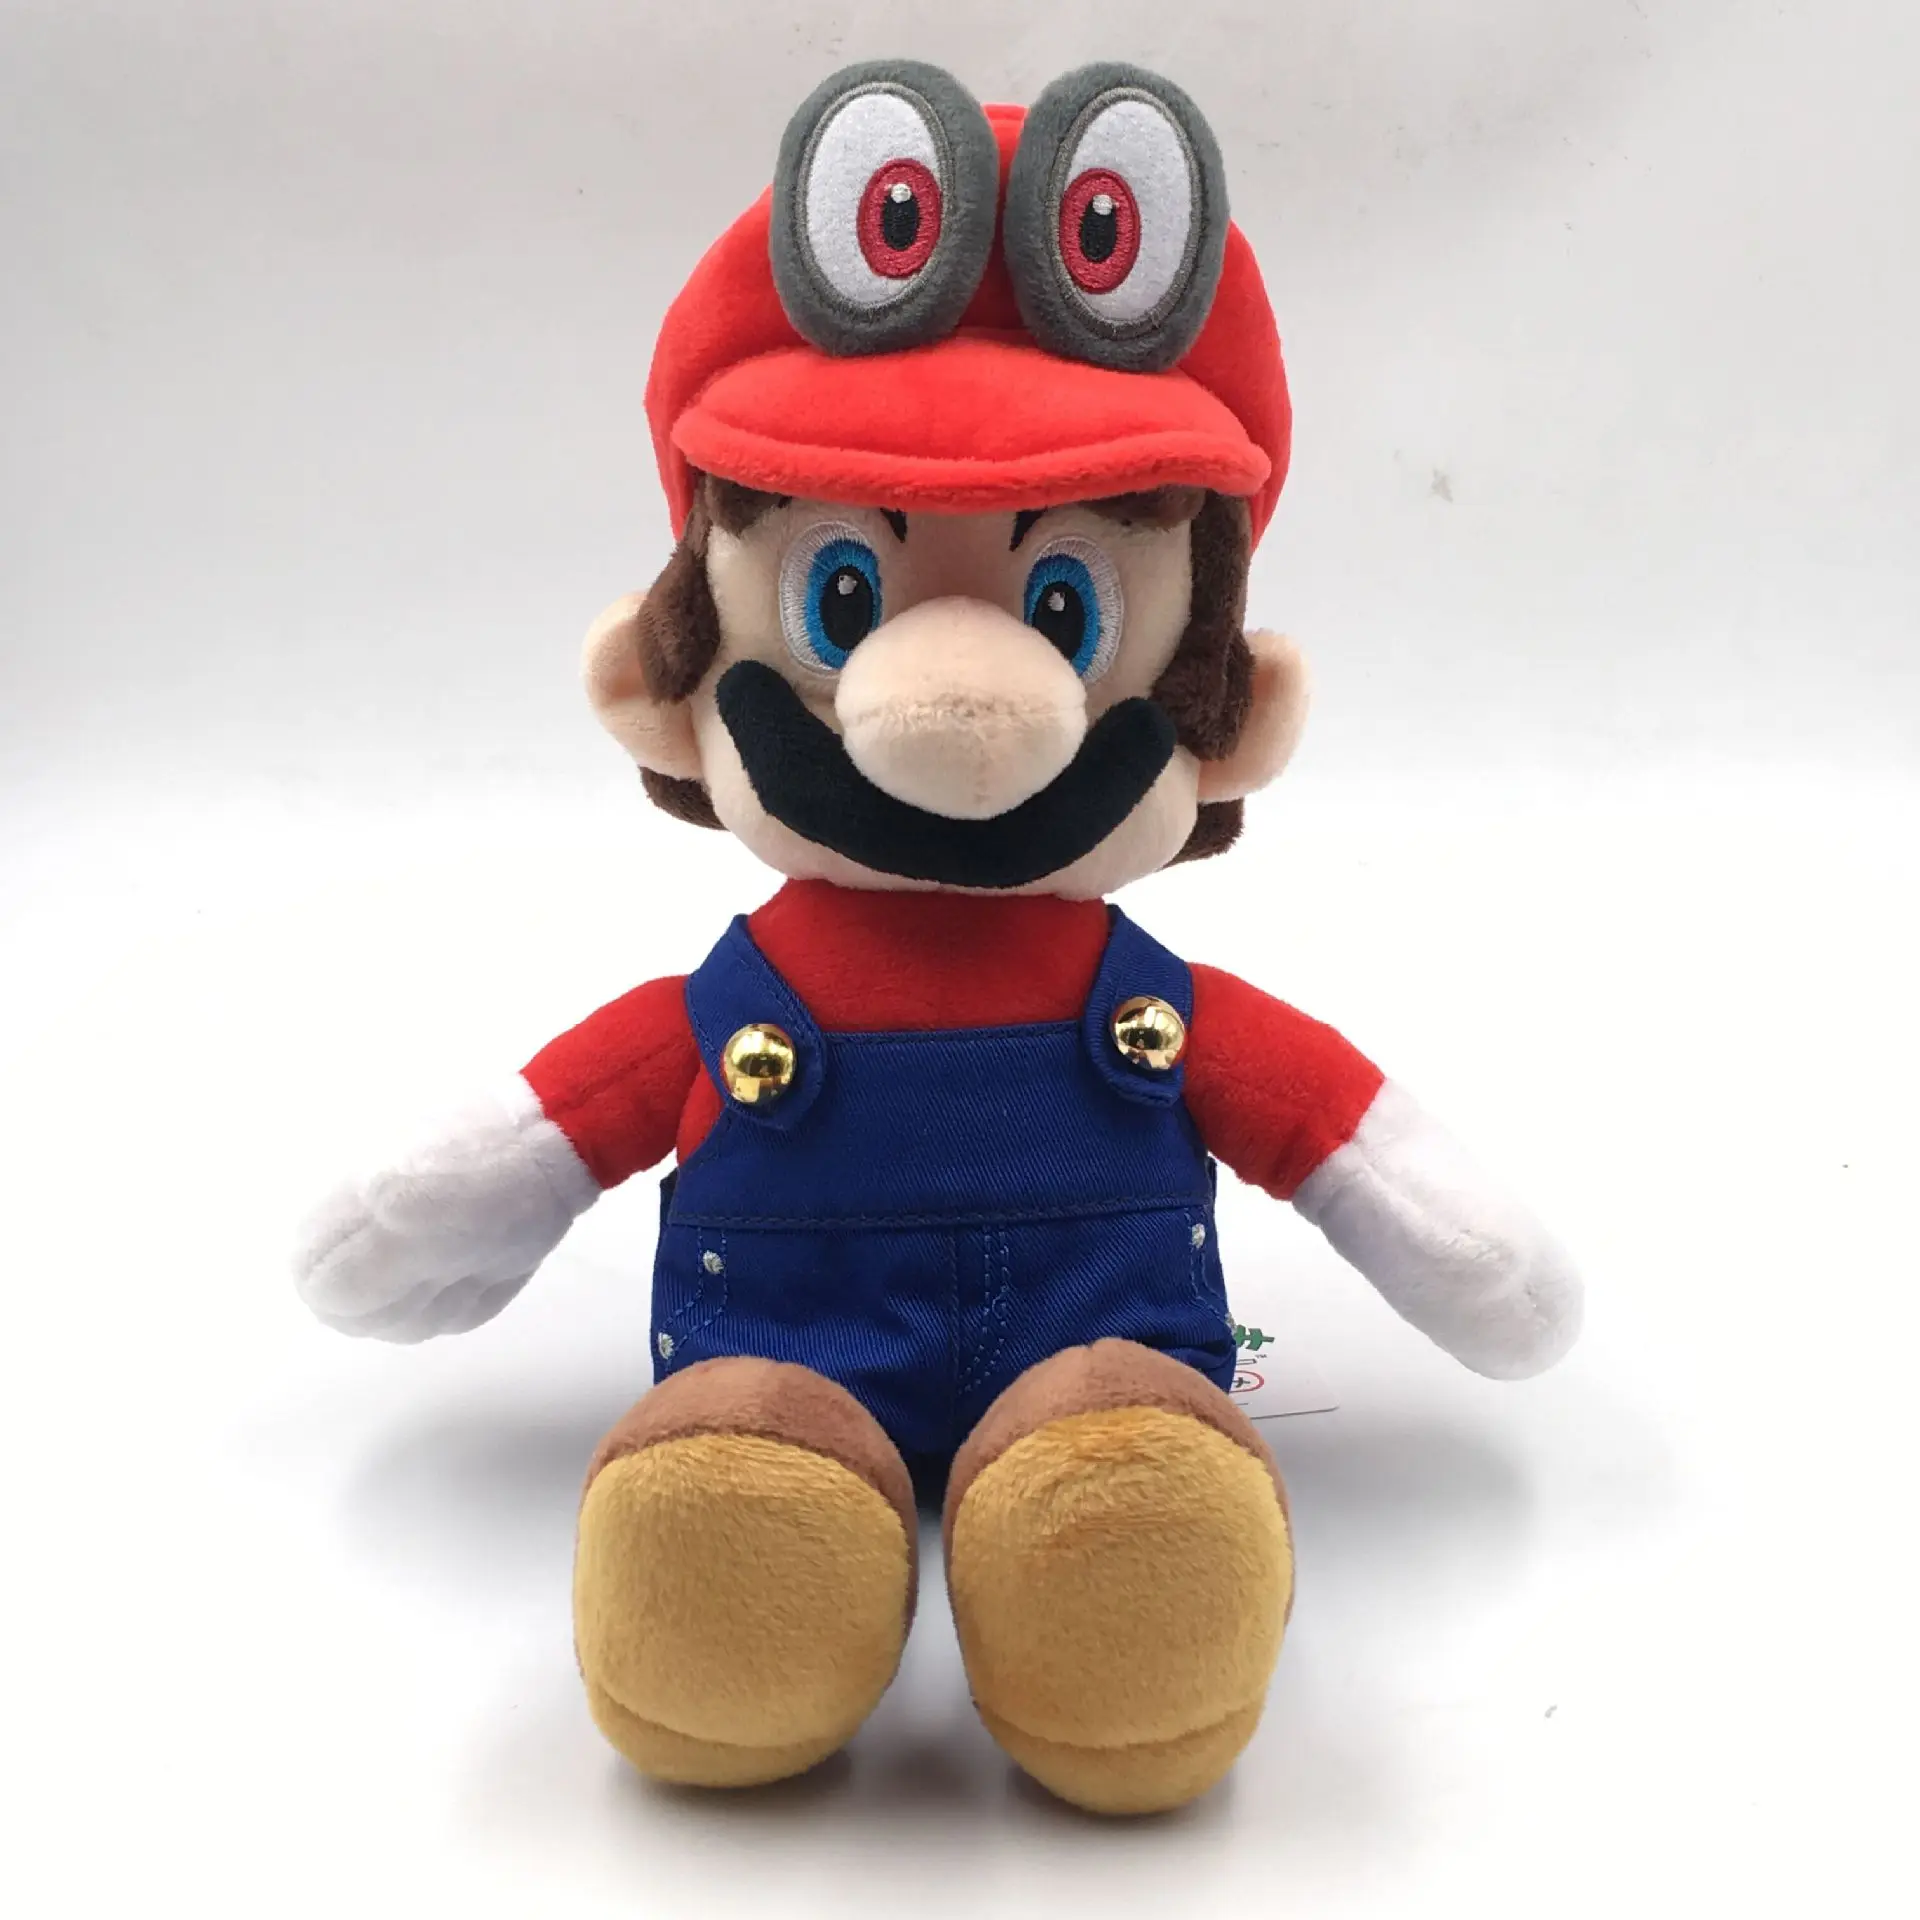 20 см Super Mario Bros мягкая плюшевая кукла игрушка игра Супер Марио Одиссея Куклы Дети подарок игрушки для детей - Цвет: Красный